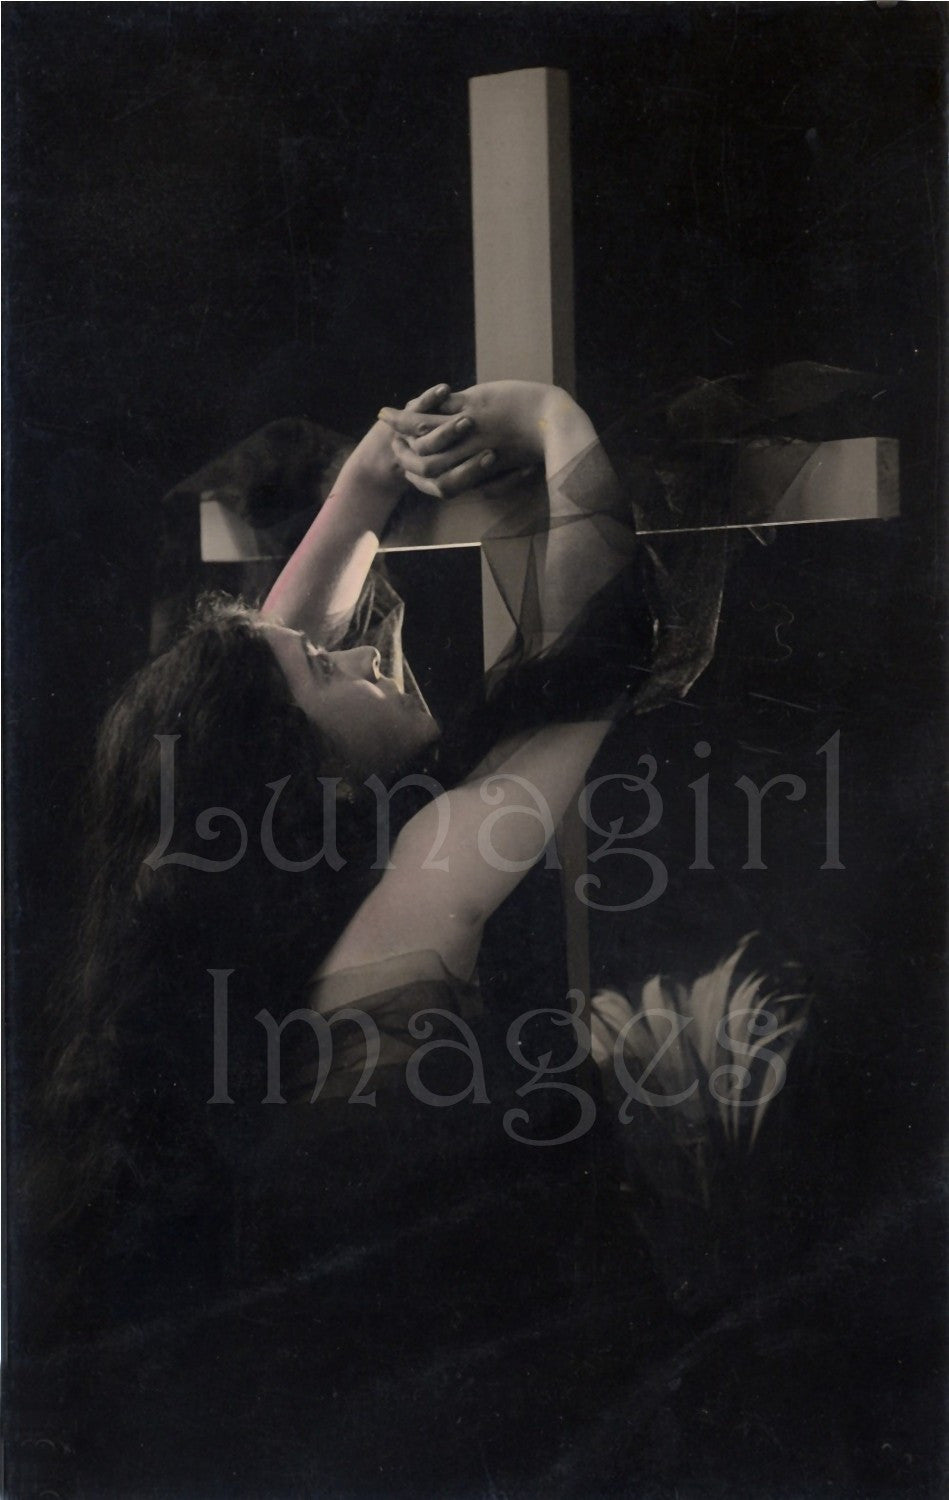 Easter Photos & Postcards: 100 Images - Lunagirl